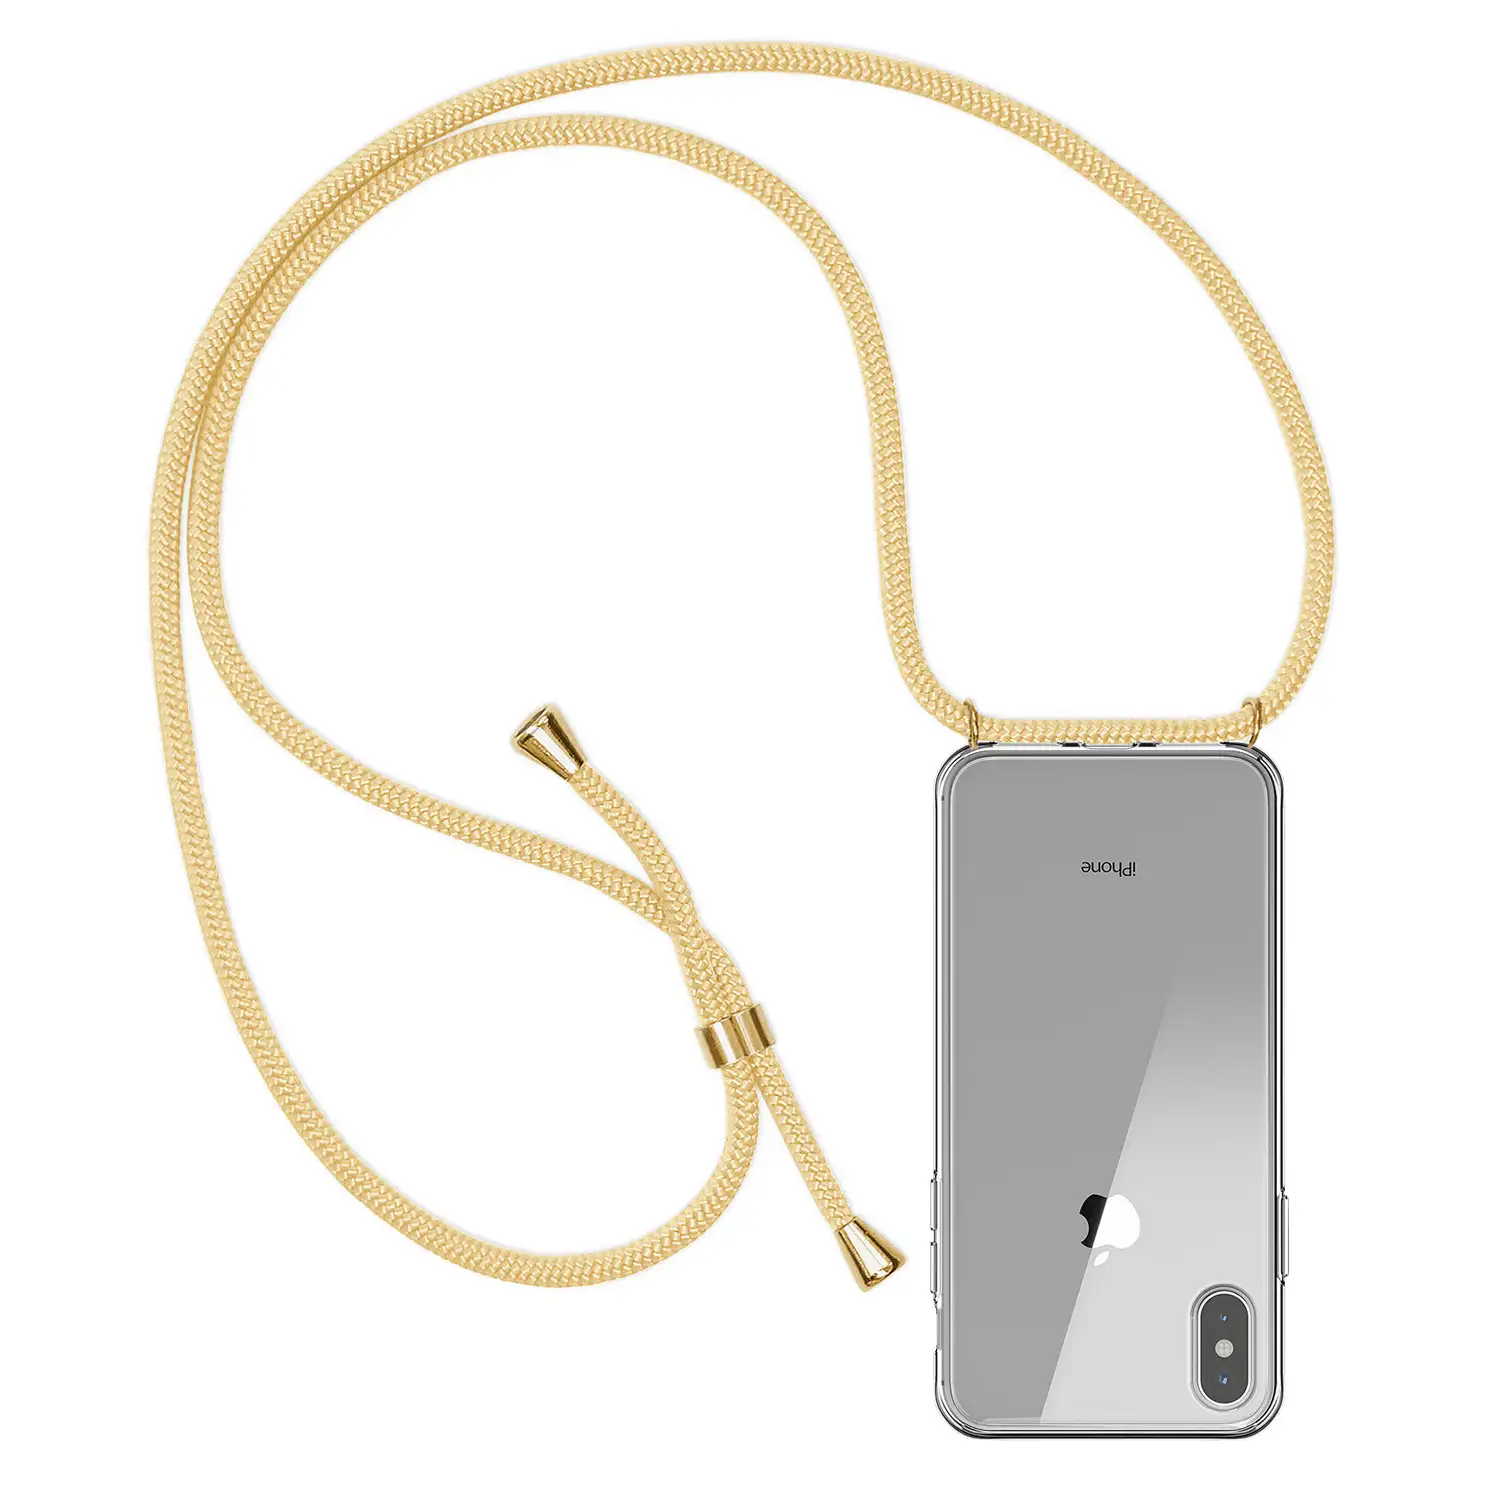 Carcasa transparente iPhone X con colgante de nylon. Accesorio de moda, ajuste perfecto y máxima protección